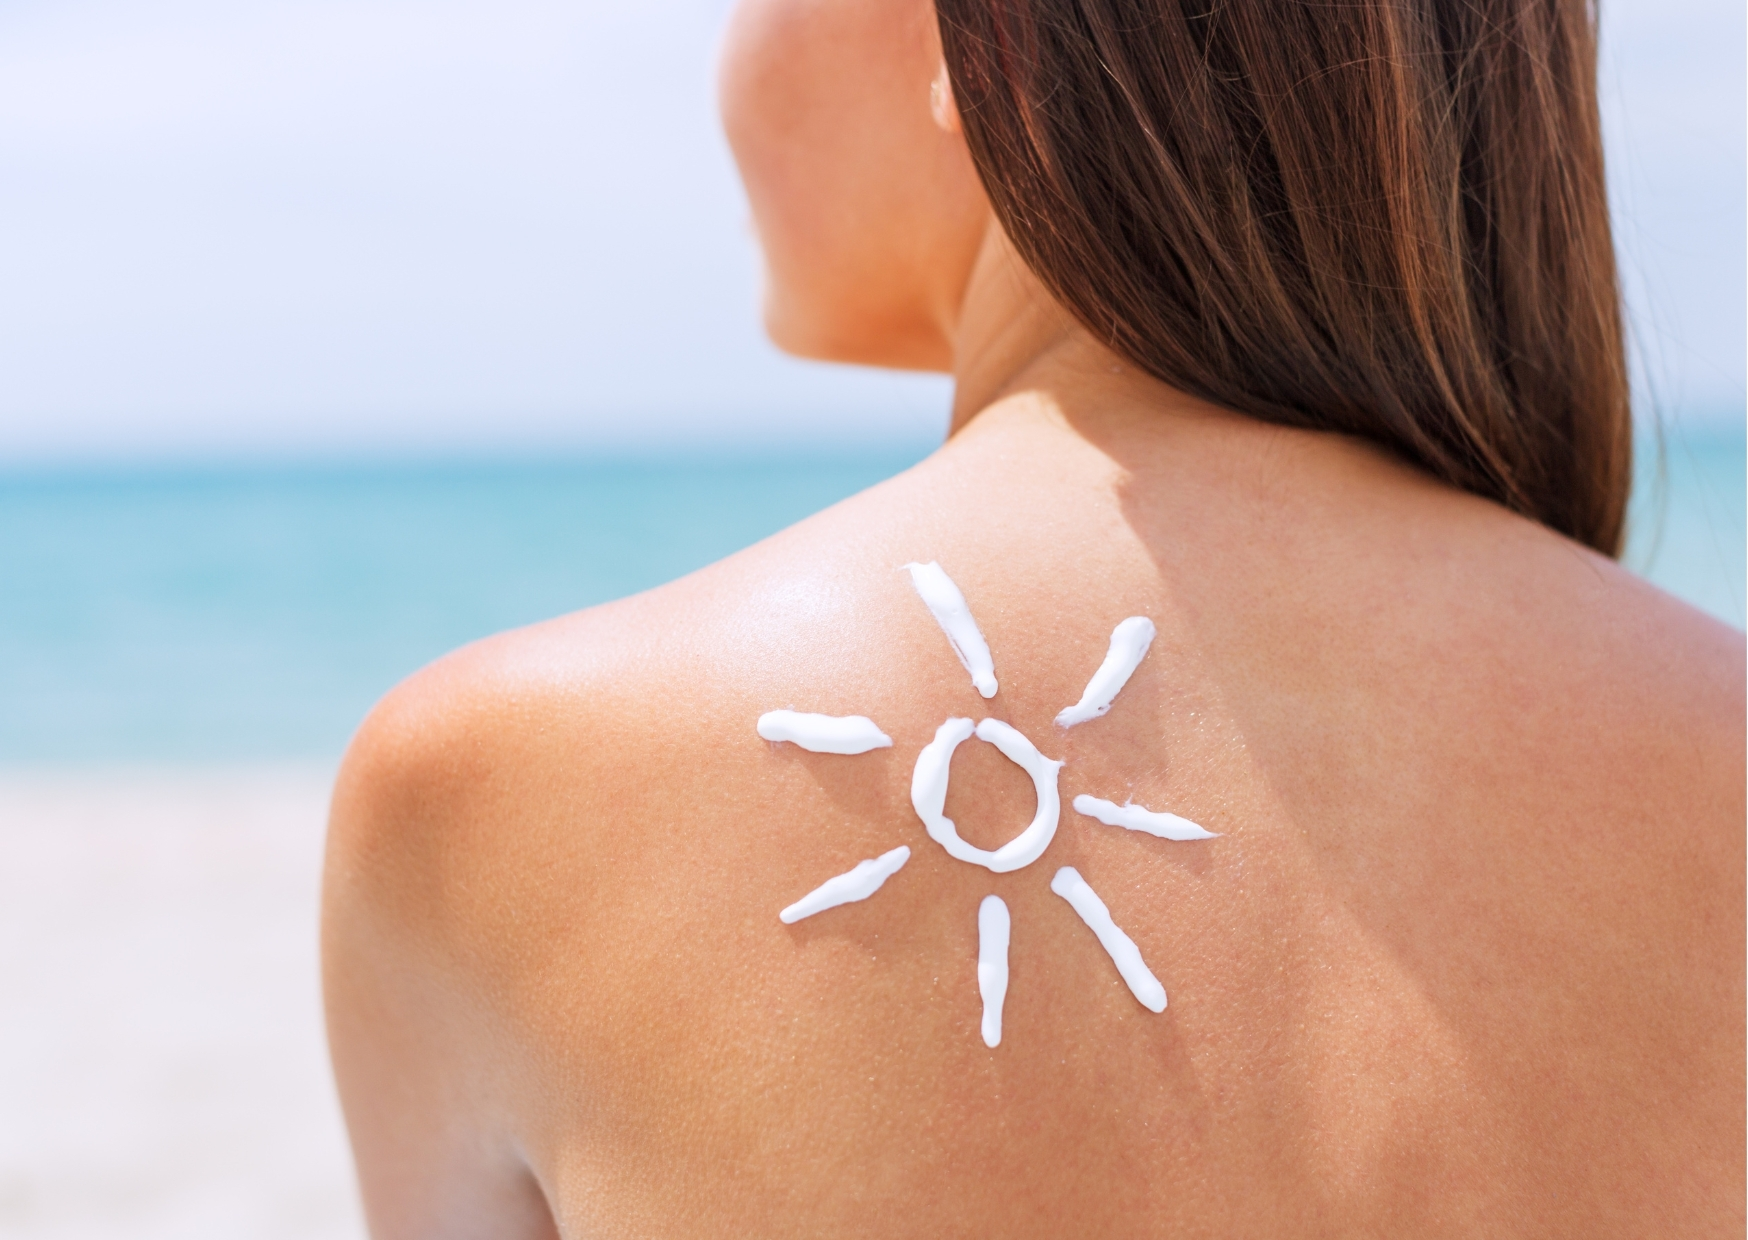 Ochrona przed słońcem na najlepszym poziomie - filtry SPF w kosmetykach